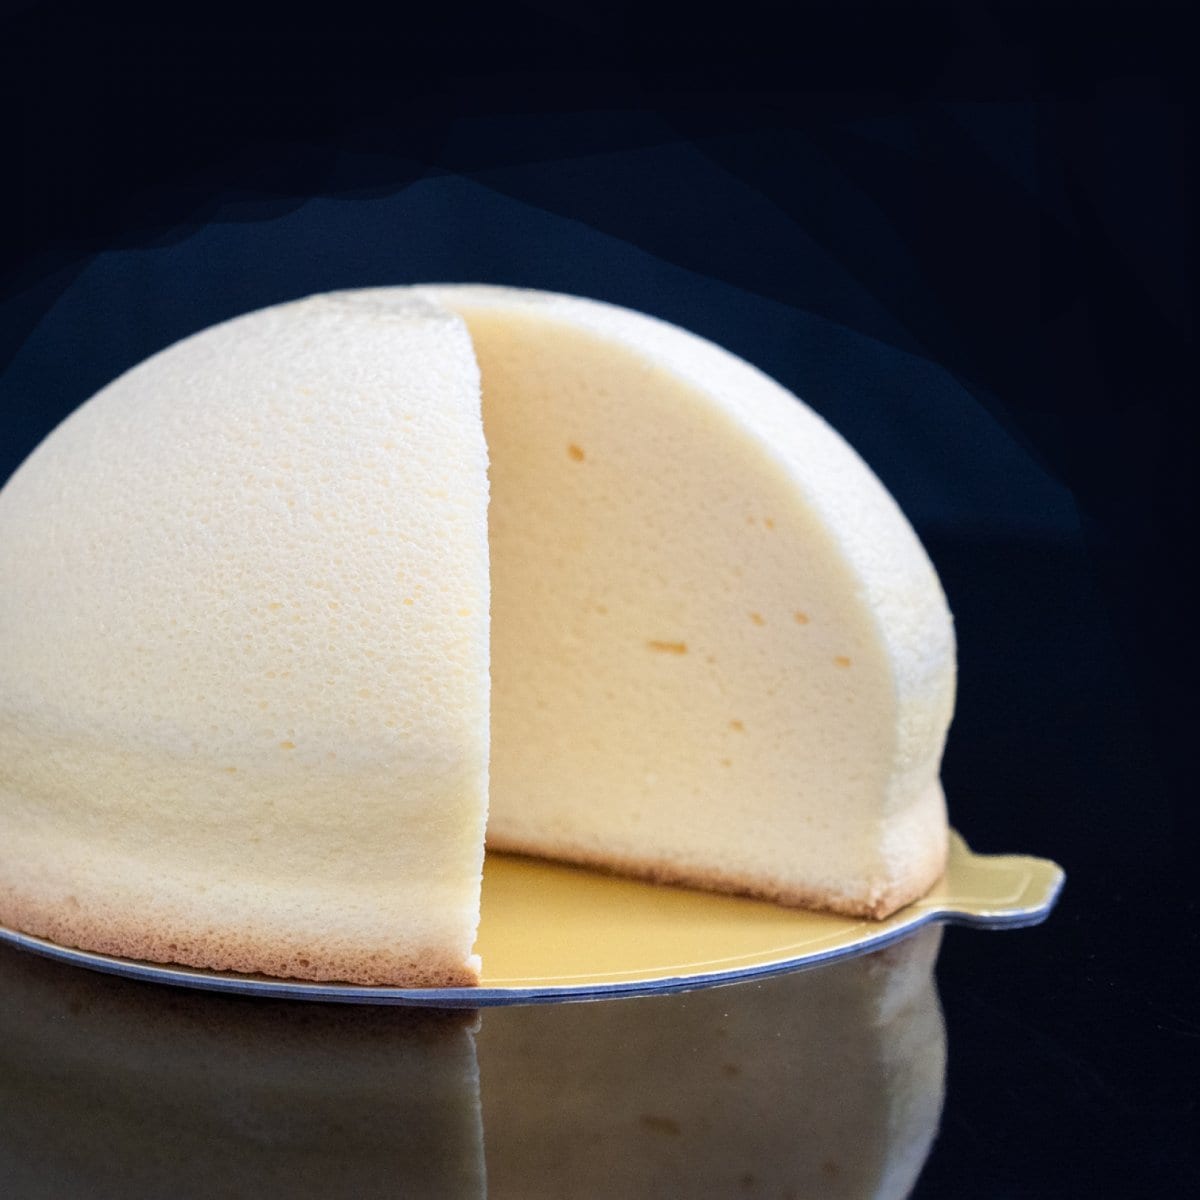 《チーズのお山》まんまるいドーム型のチーズスフレ